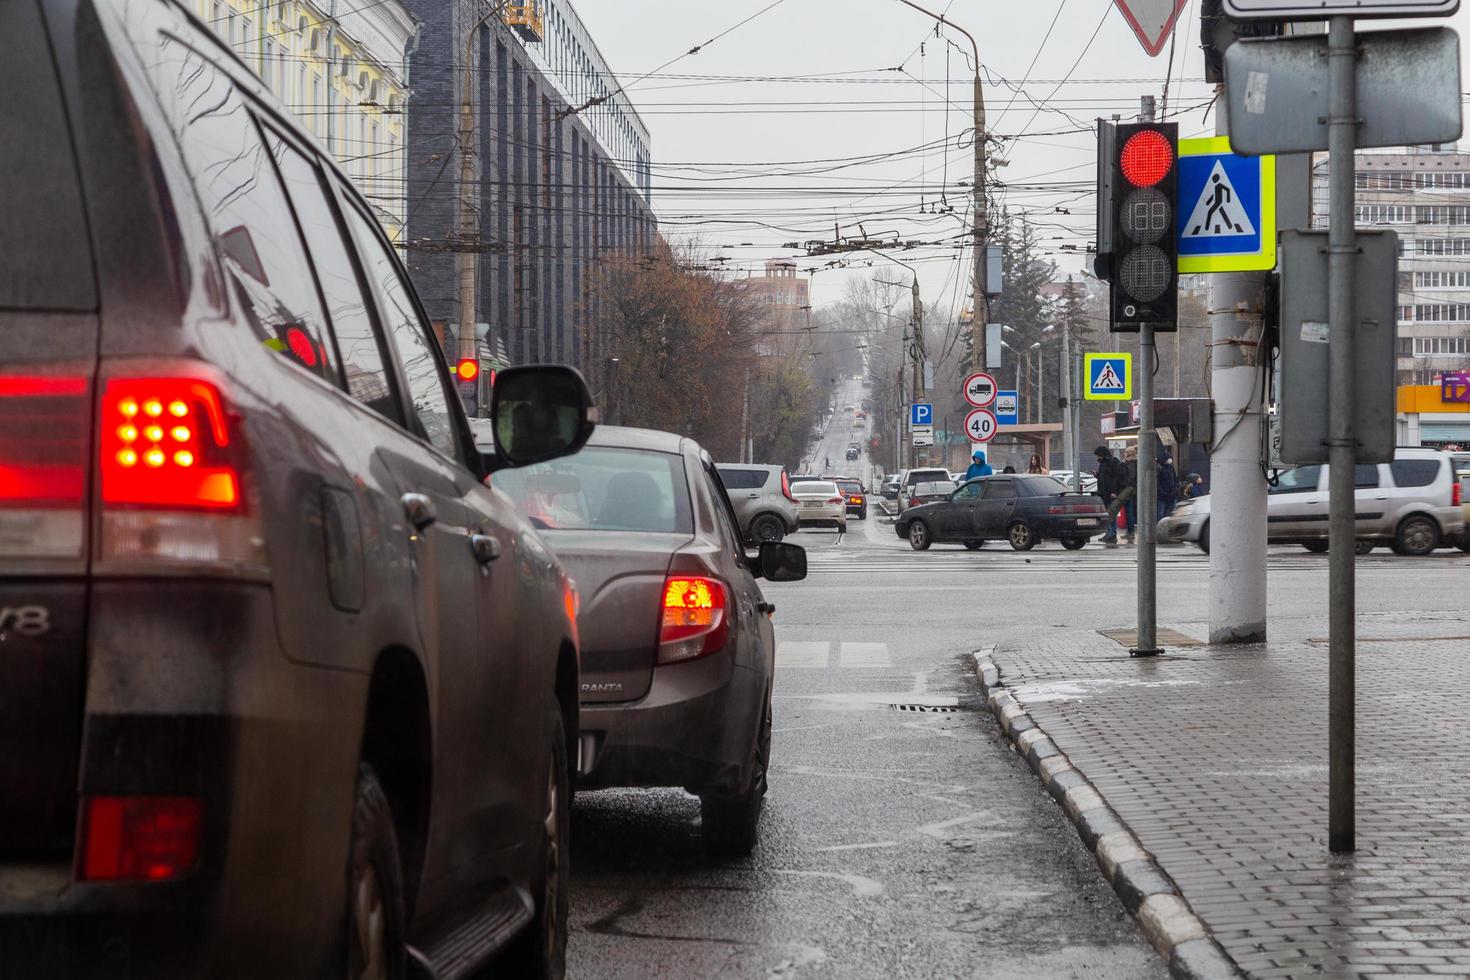 tula, russie - 21 novembre 2020, circulation des voitures de rue et des piétons en hiver à la croisée des chemins photo